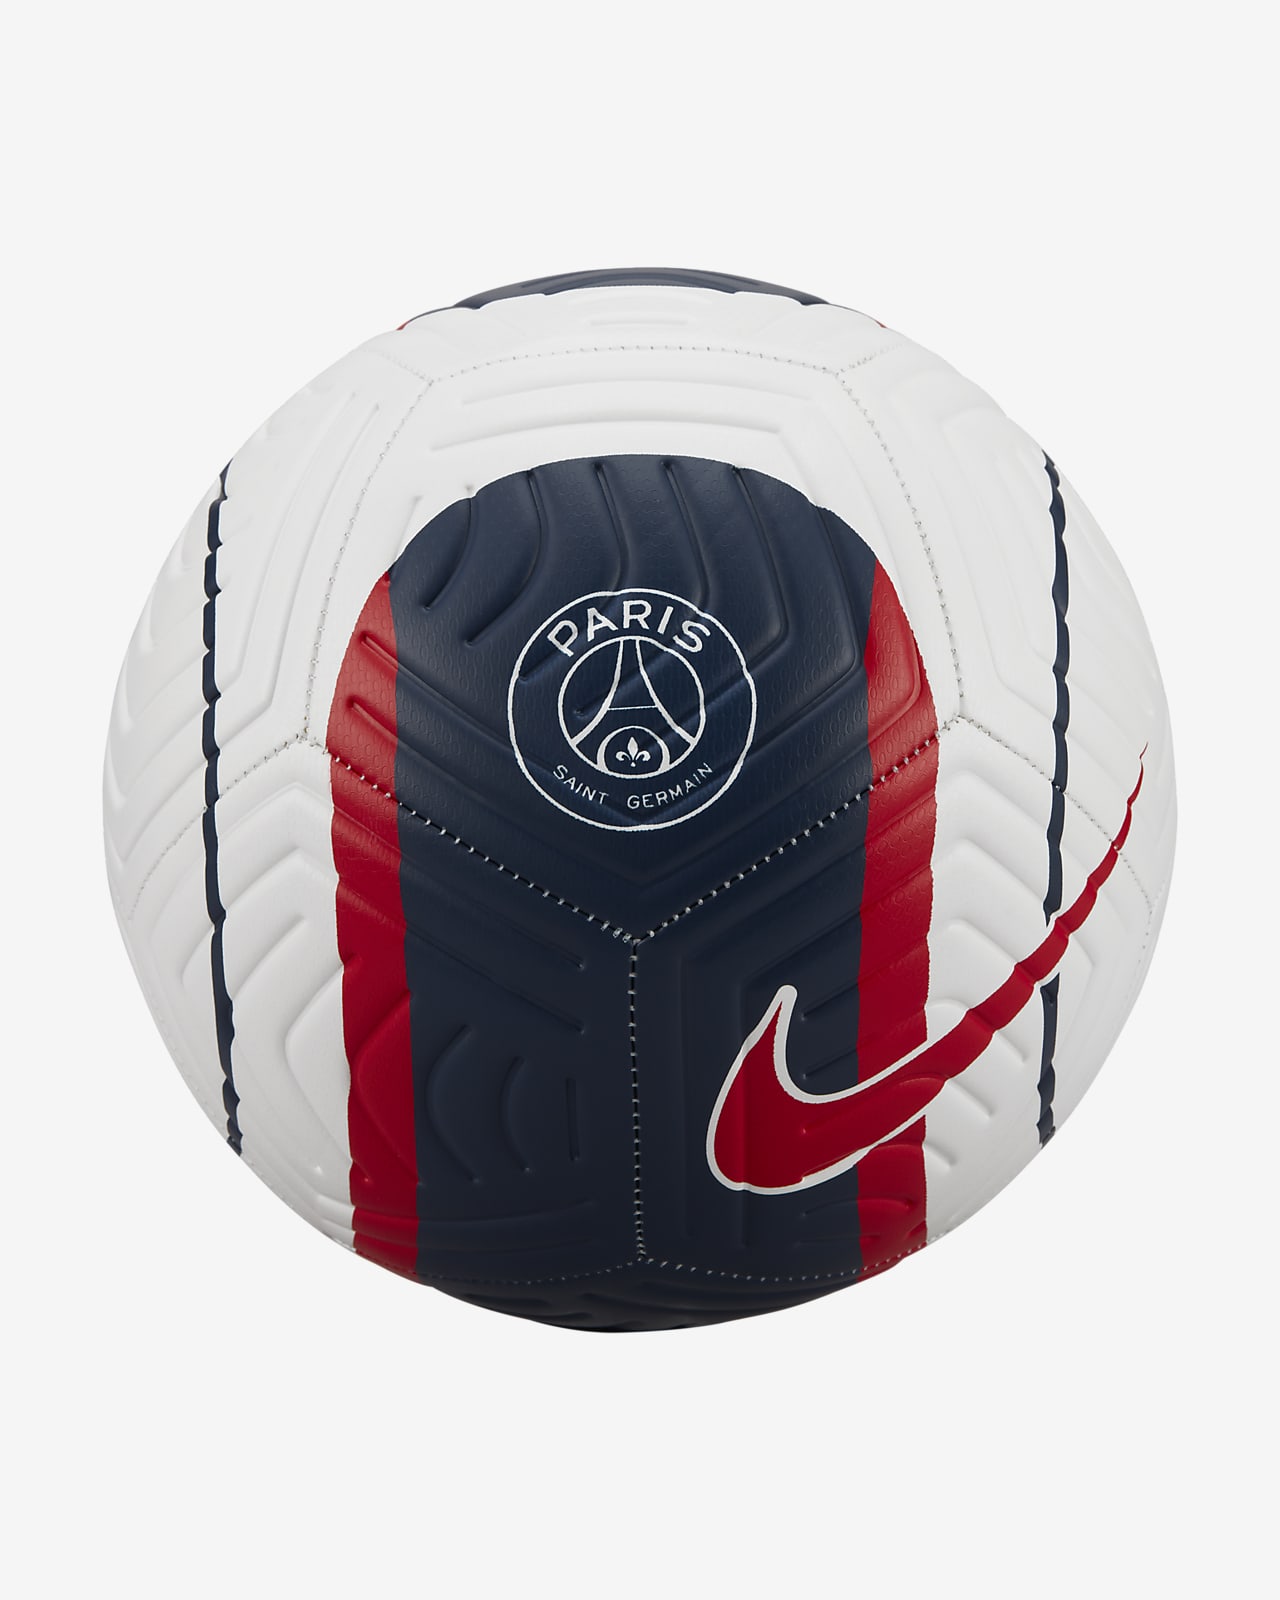 Balón Saint-Germain Strike. Nike.com